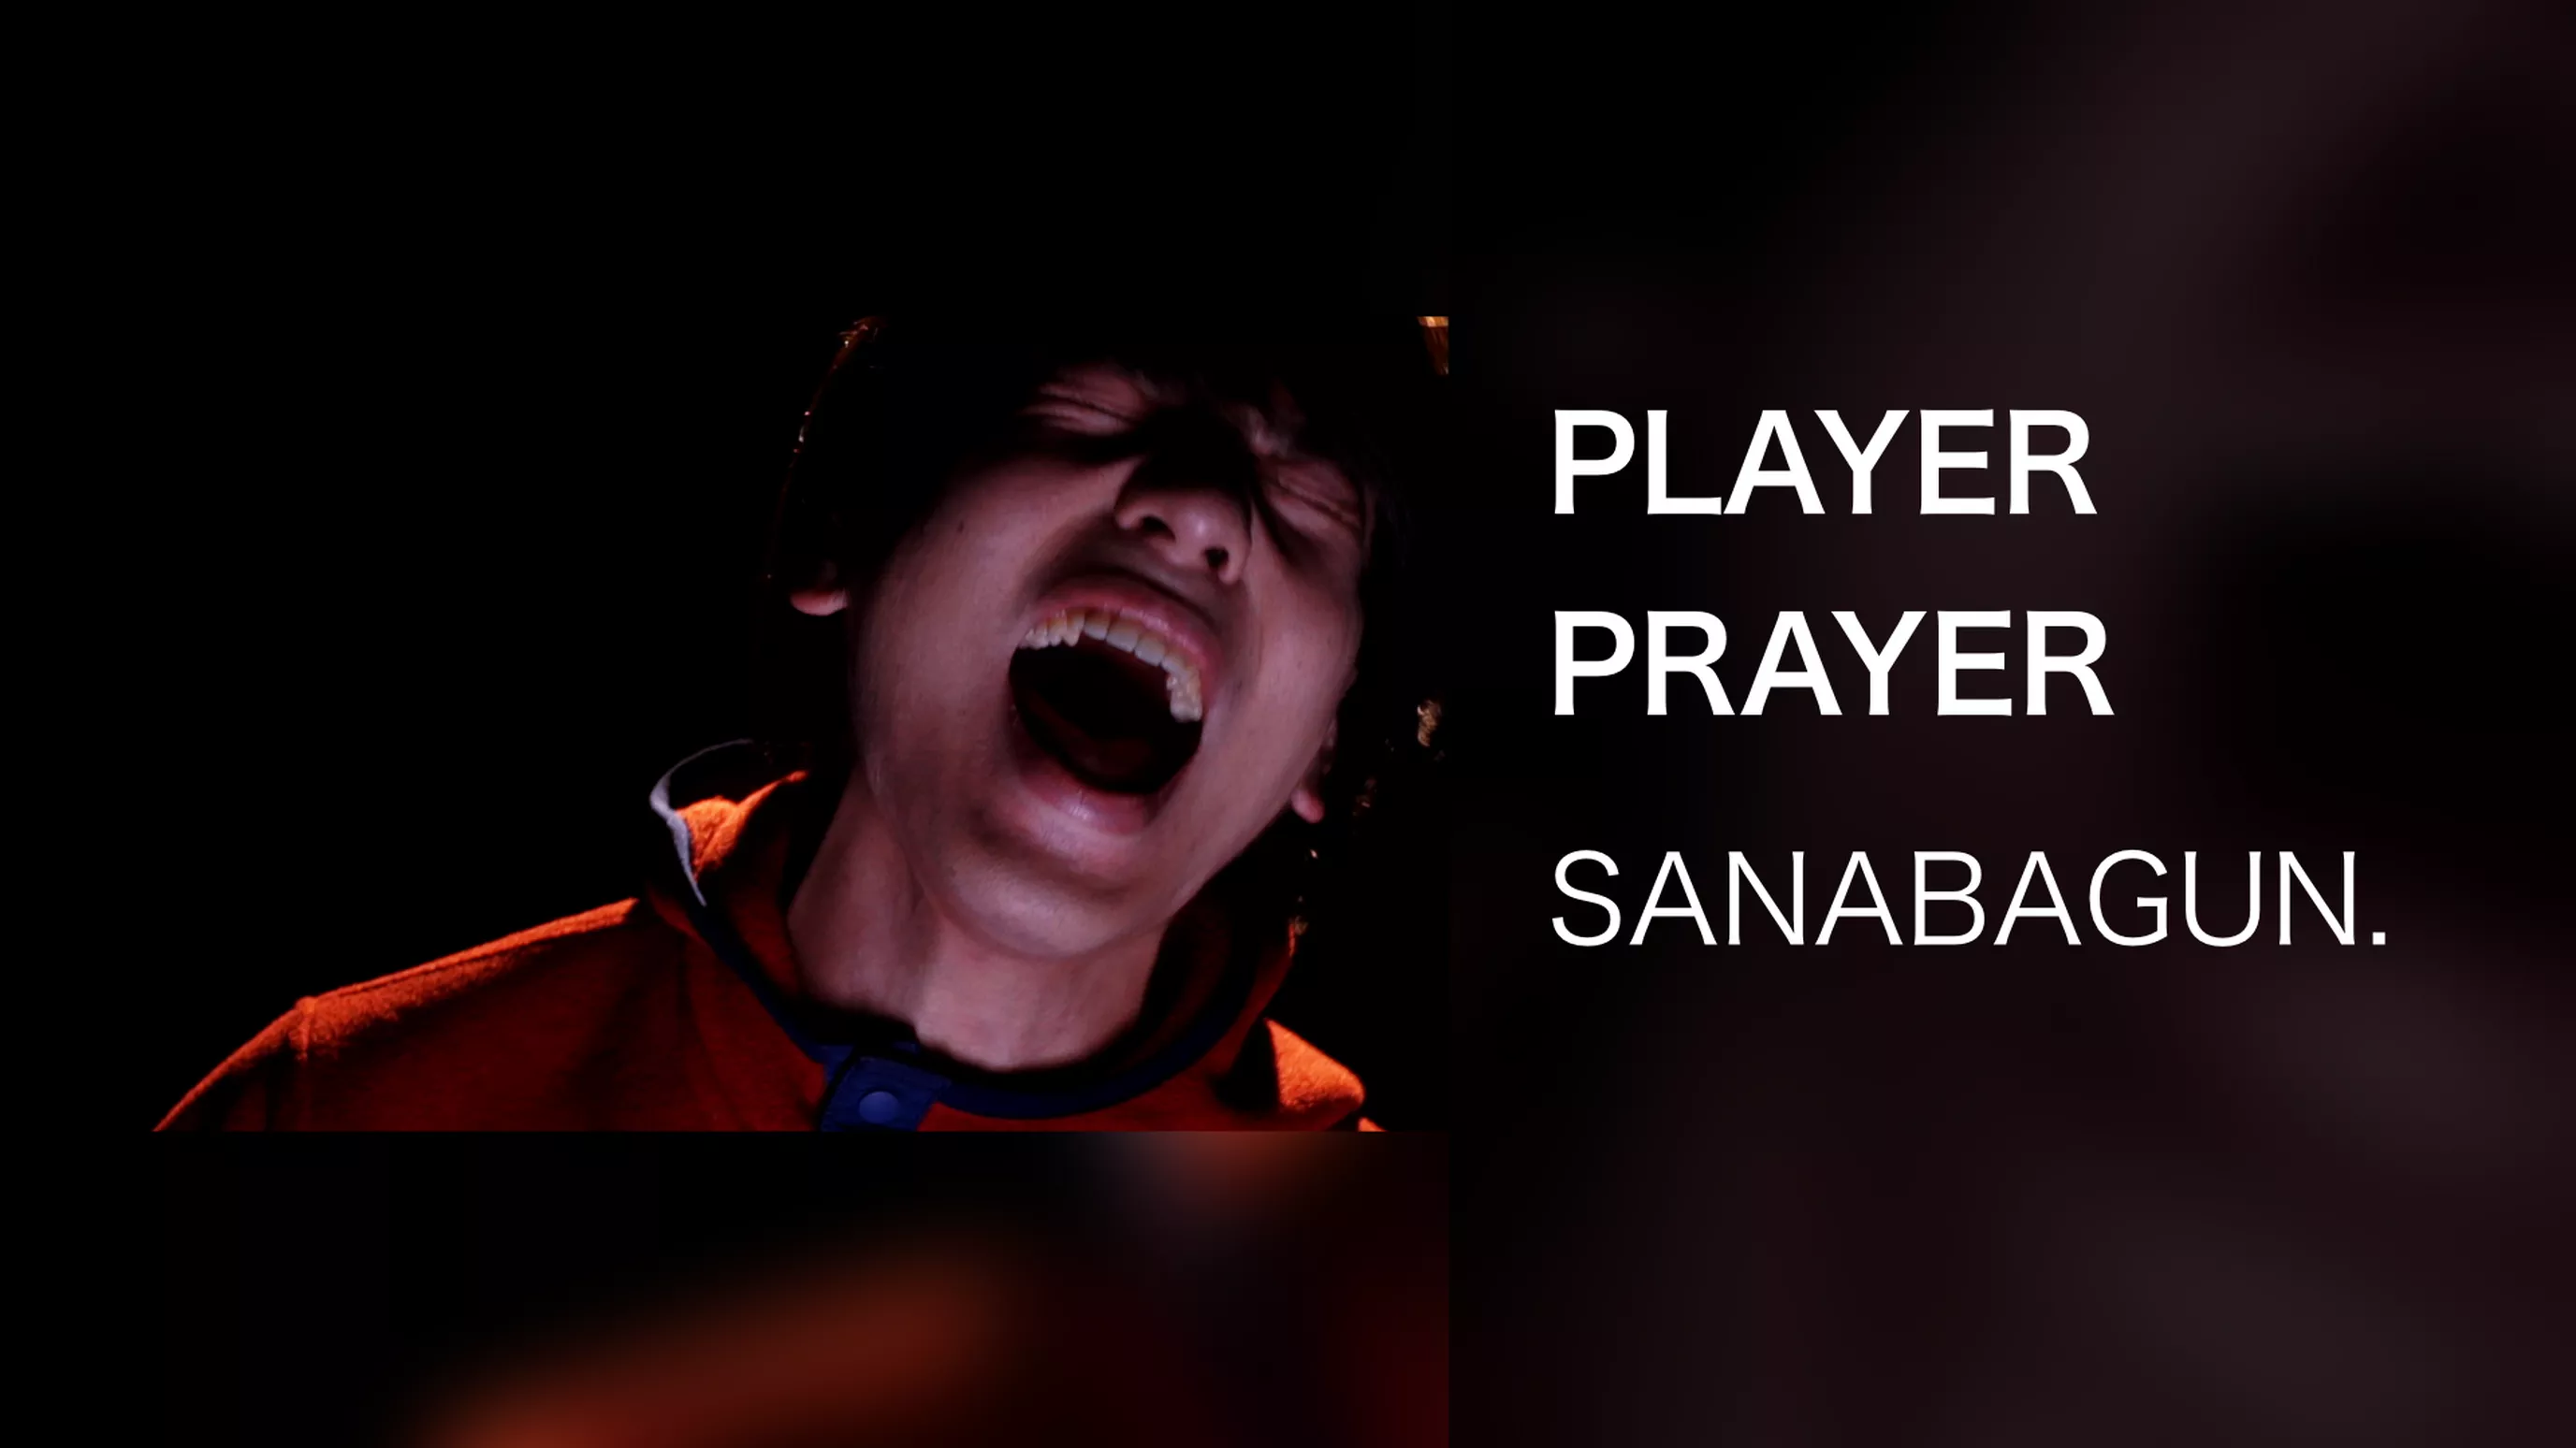 PLAYER PRAYER